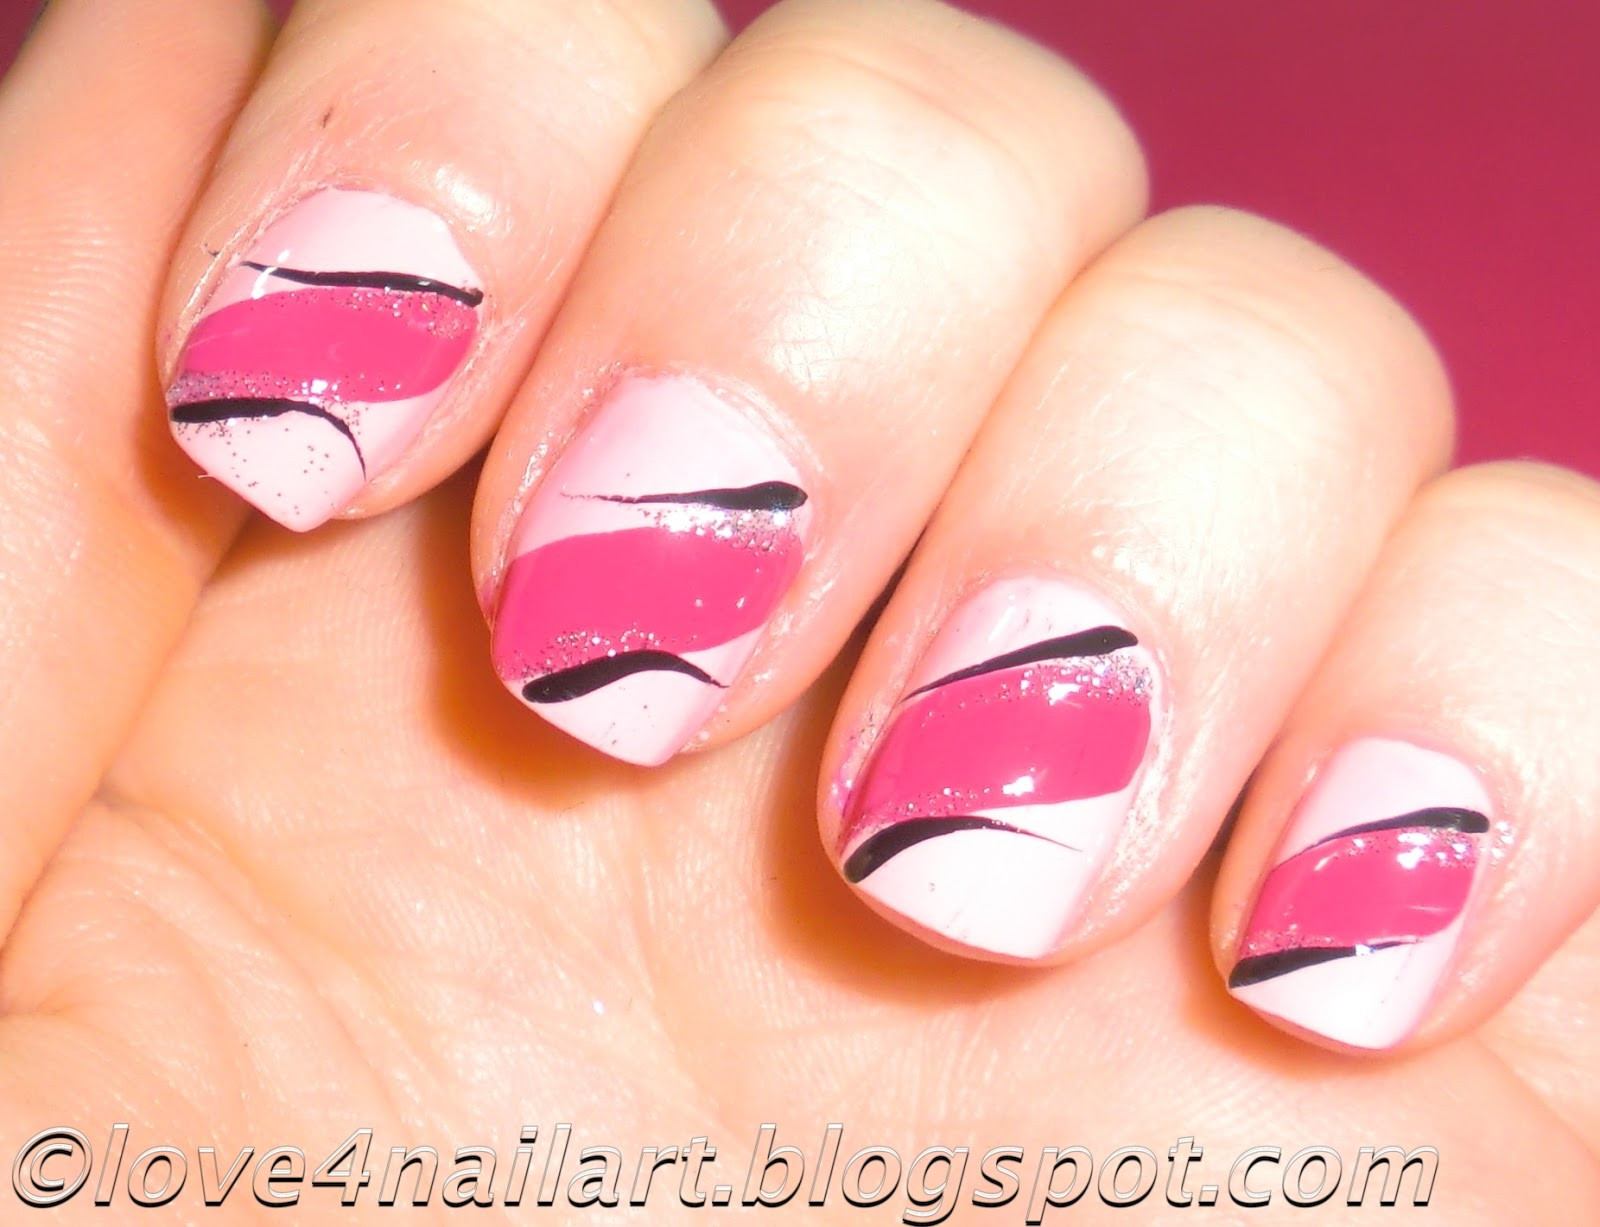 Nail Art Tutorials For Short Nails
 Love4NailArt EASY Pink Nail Art Design 4 Short Nails